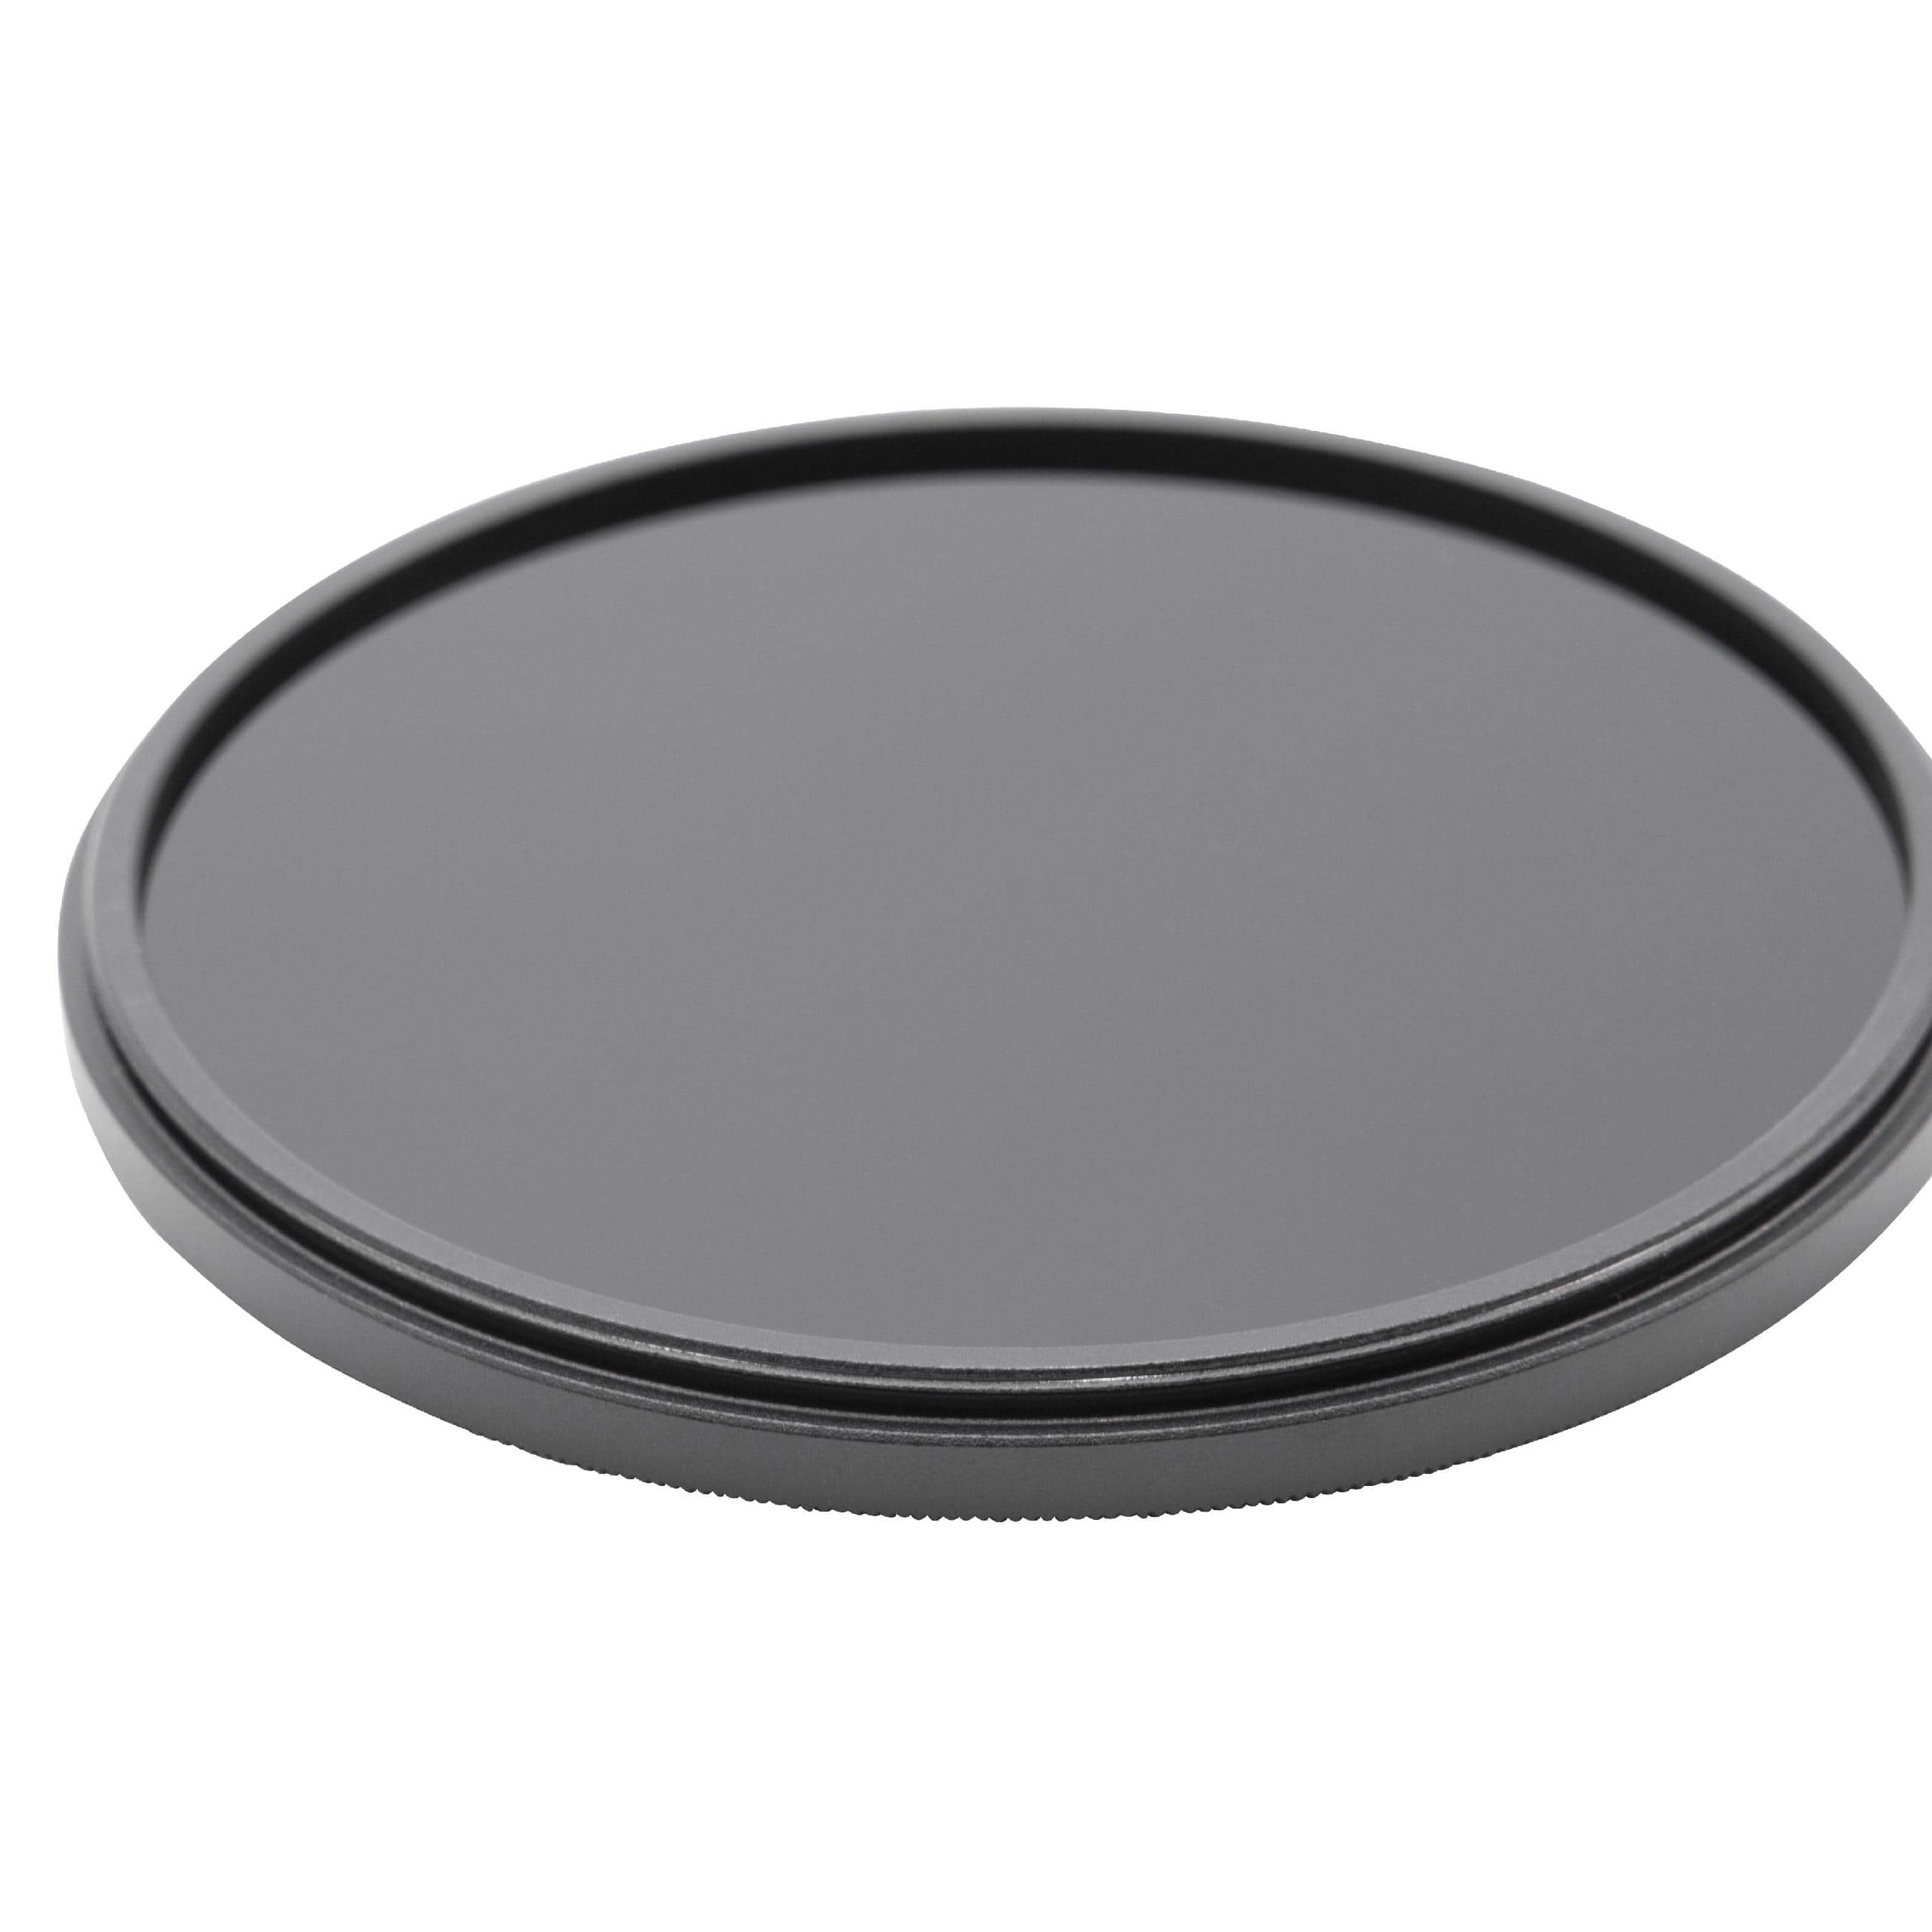 Filtre ND 1000 universel pour objectif d'appareil photo de 77 mm de diamètre – Filtre gris